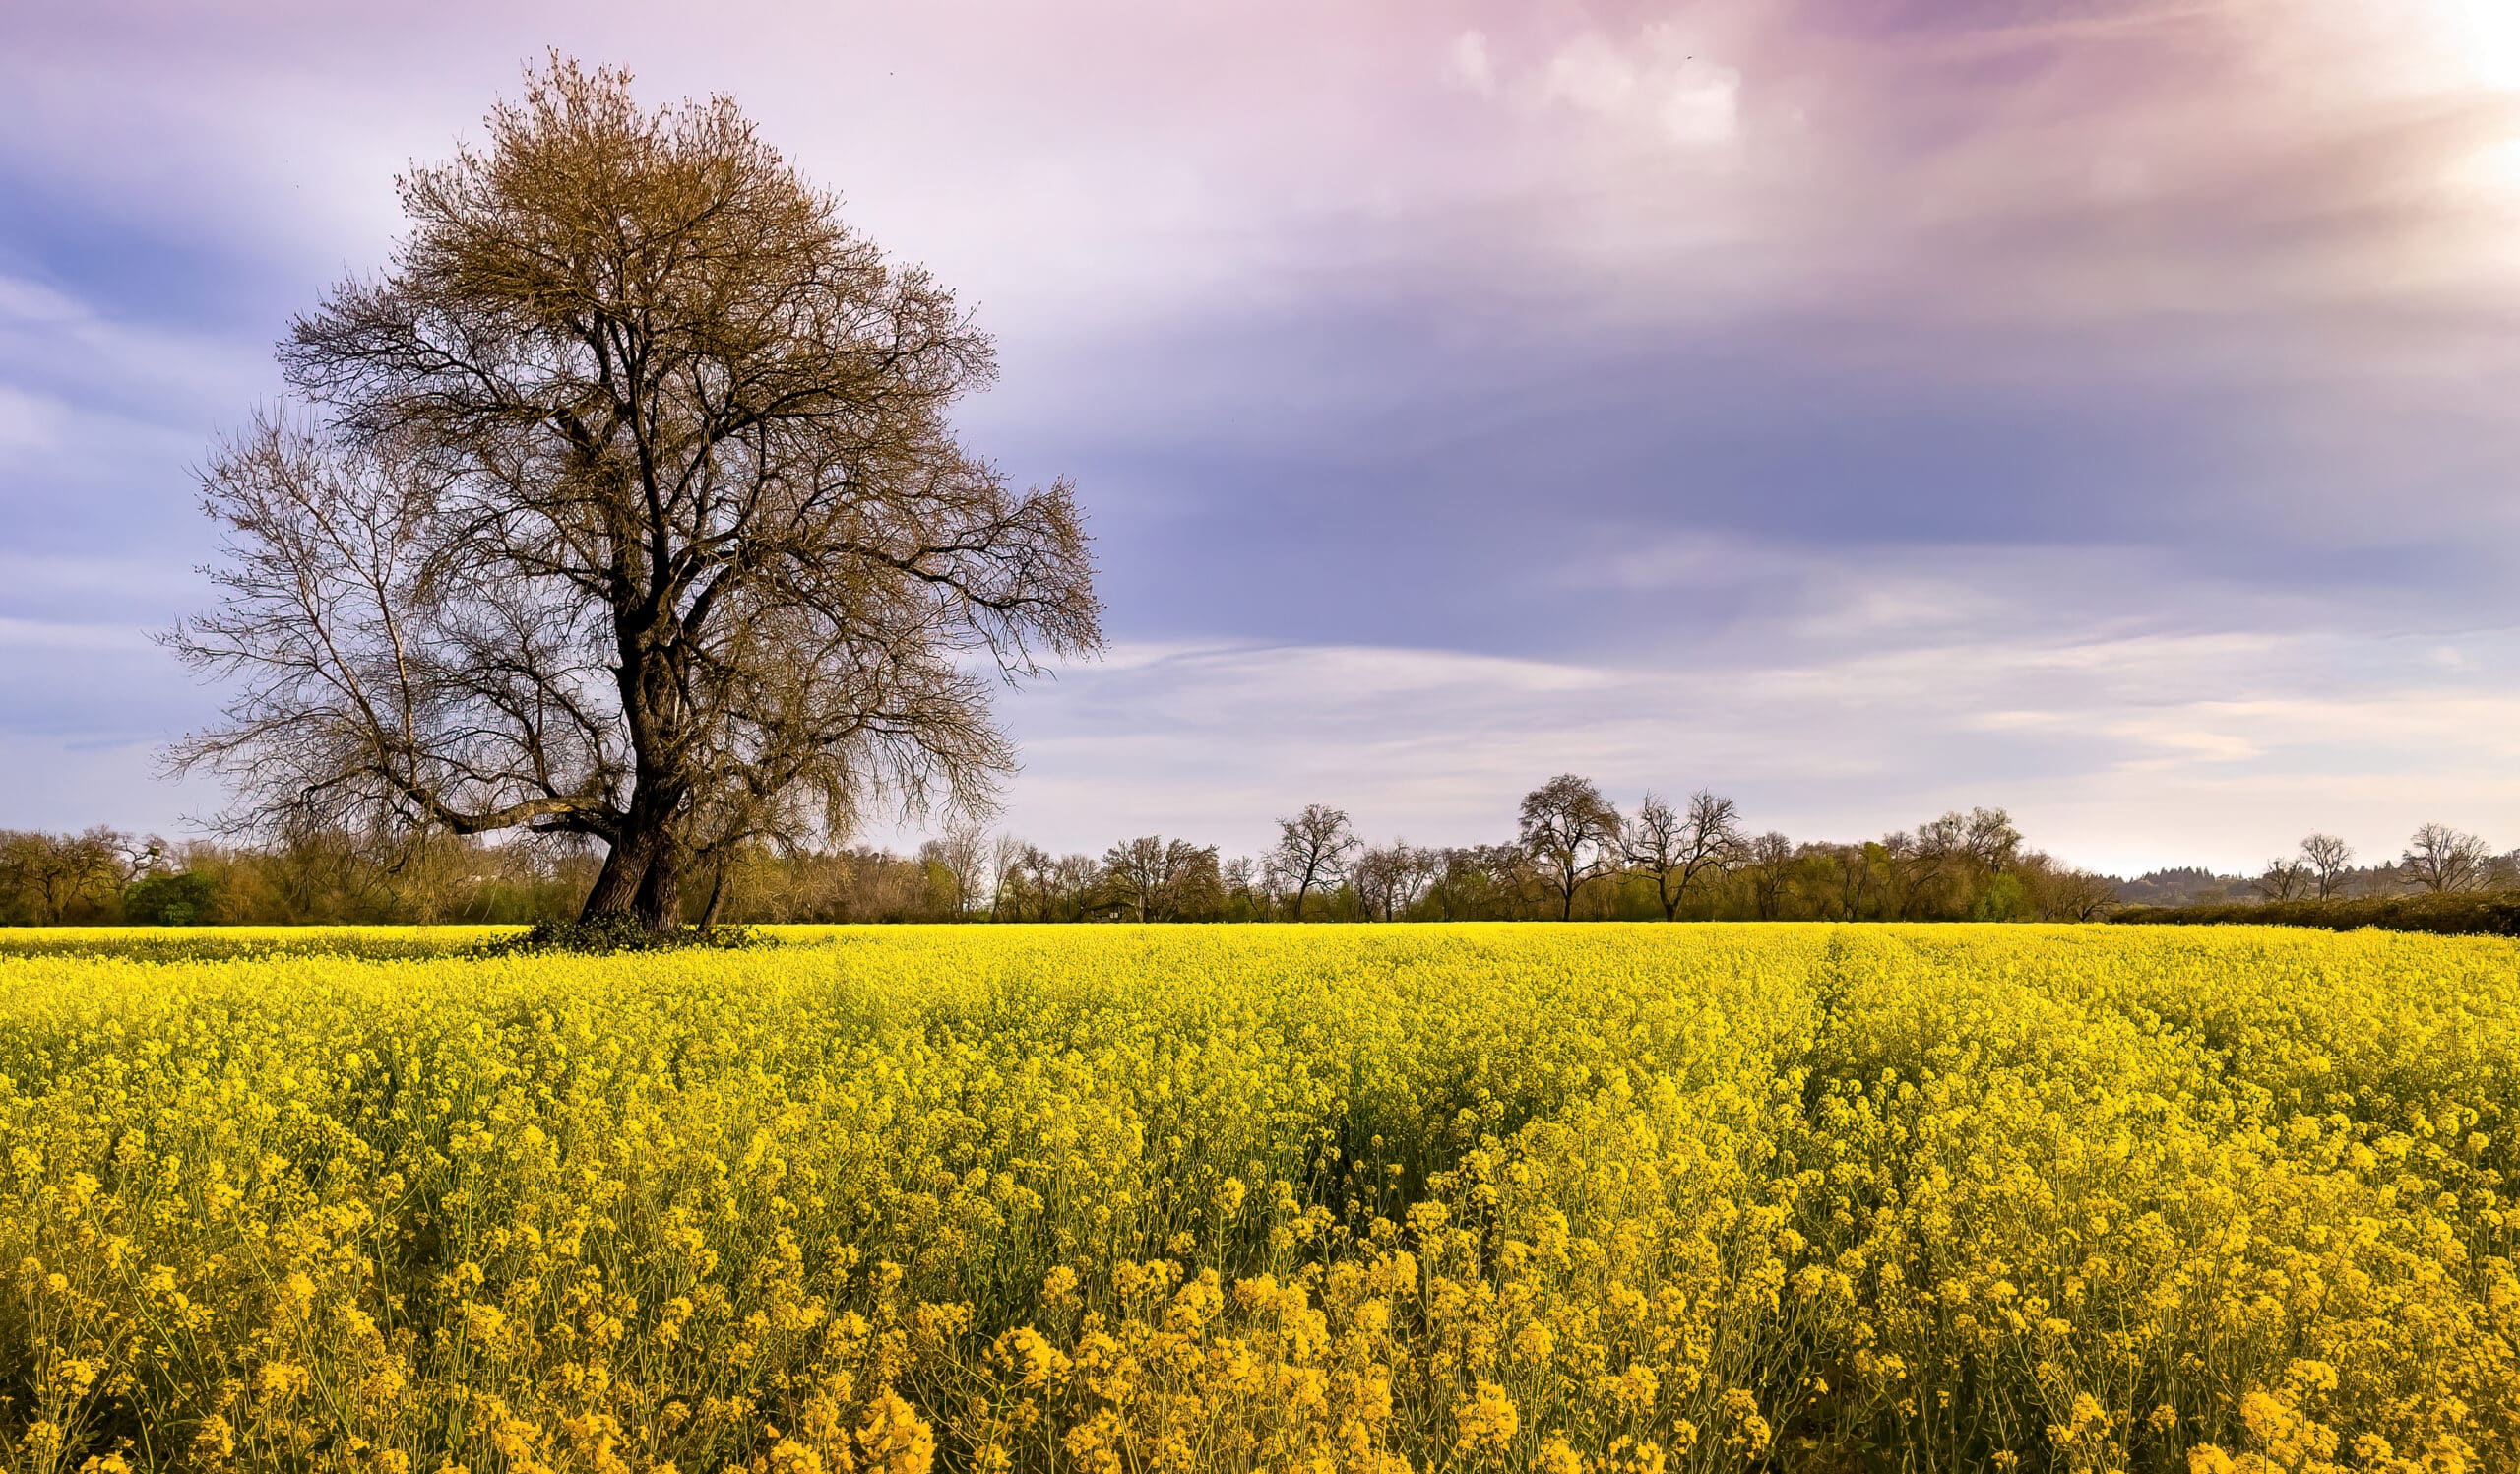 A tree among a mustard field.